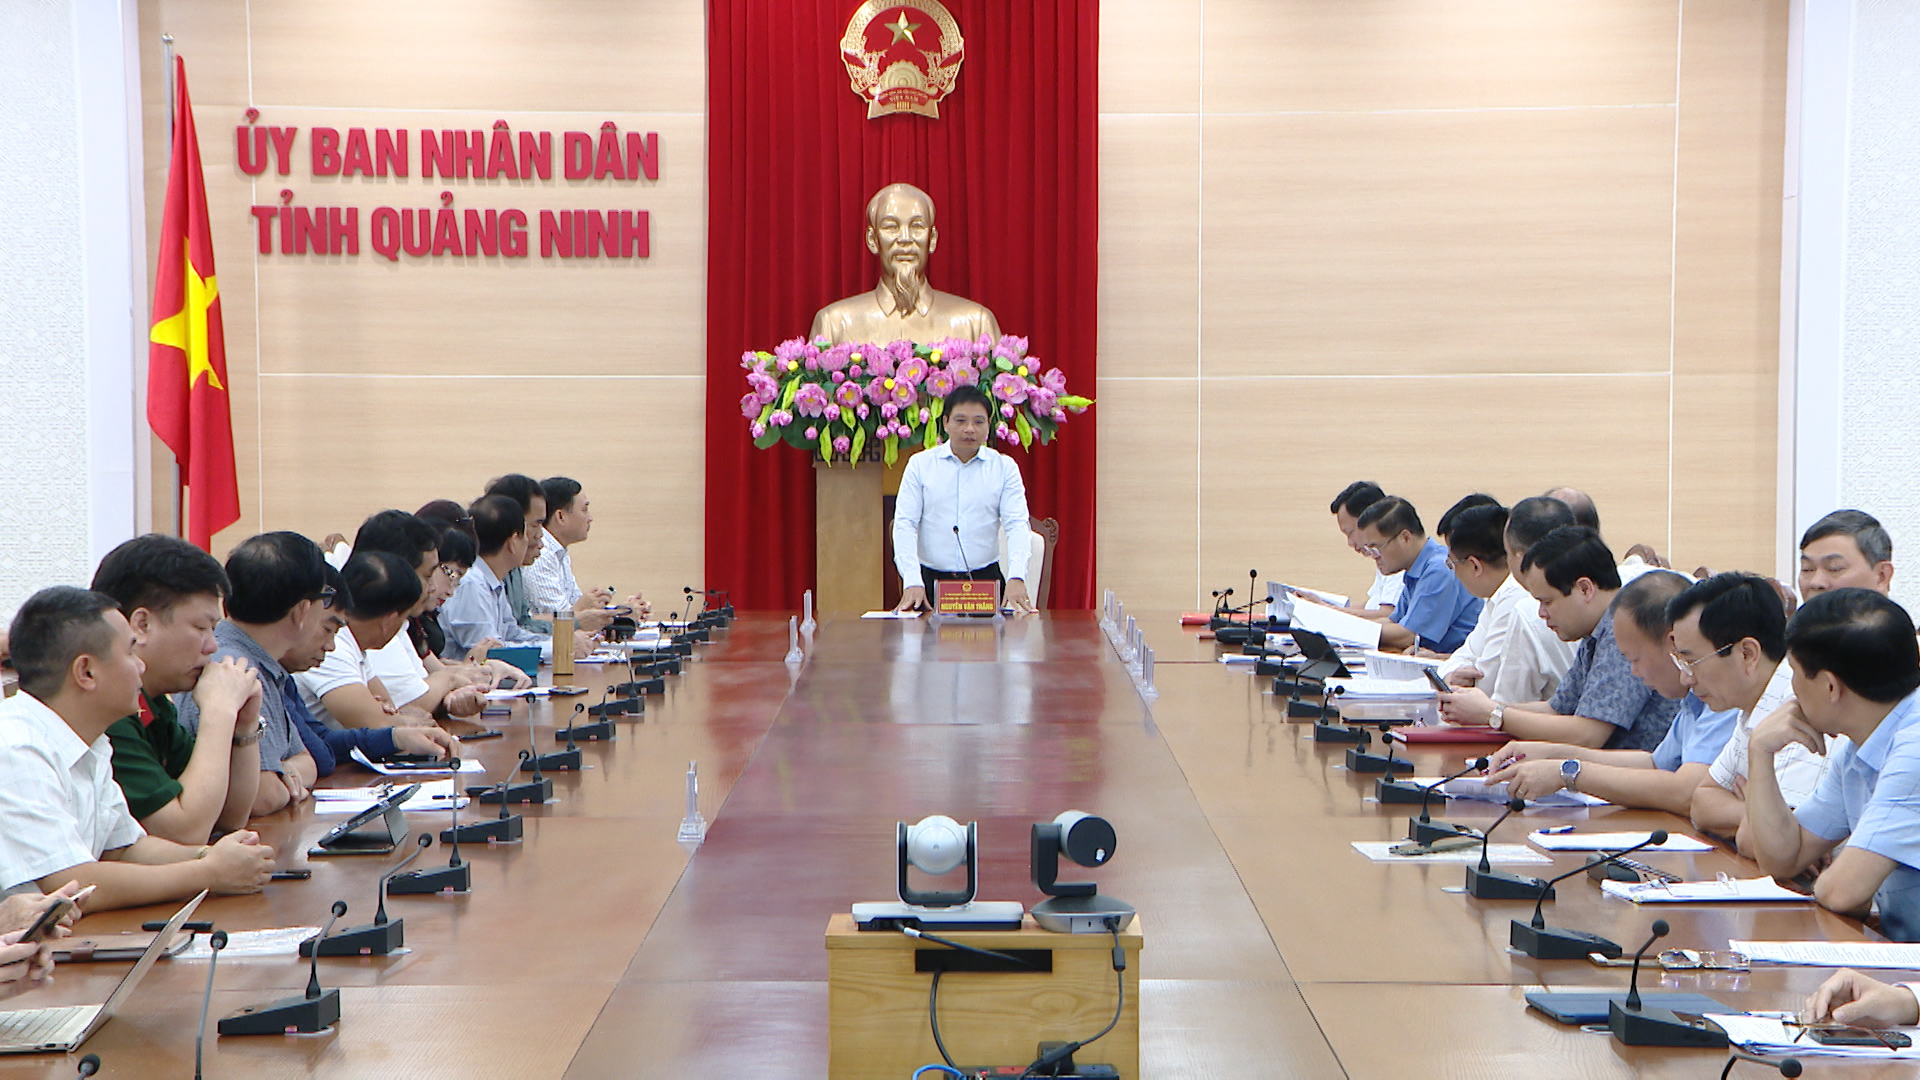 Đồng chí Nguyễn Văn Thắng, Chủ tịch UBND tỉnh cho ý kiến về địa điểm nghiên cứu quy hoạch, chủ trương đầu tư một số dự án